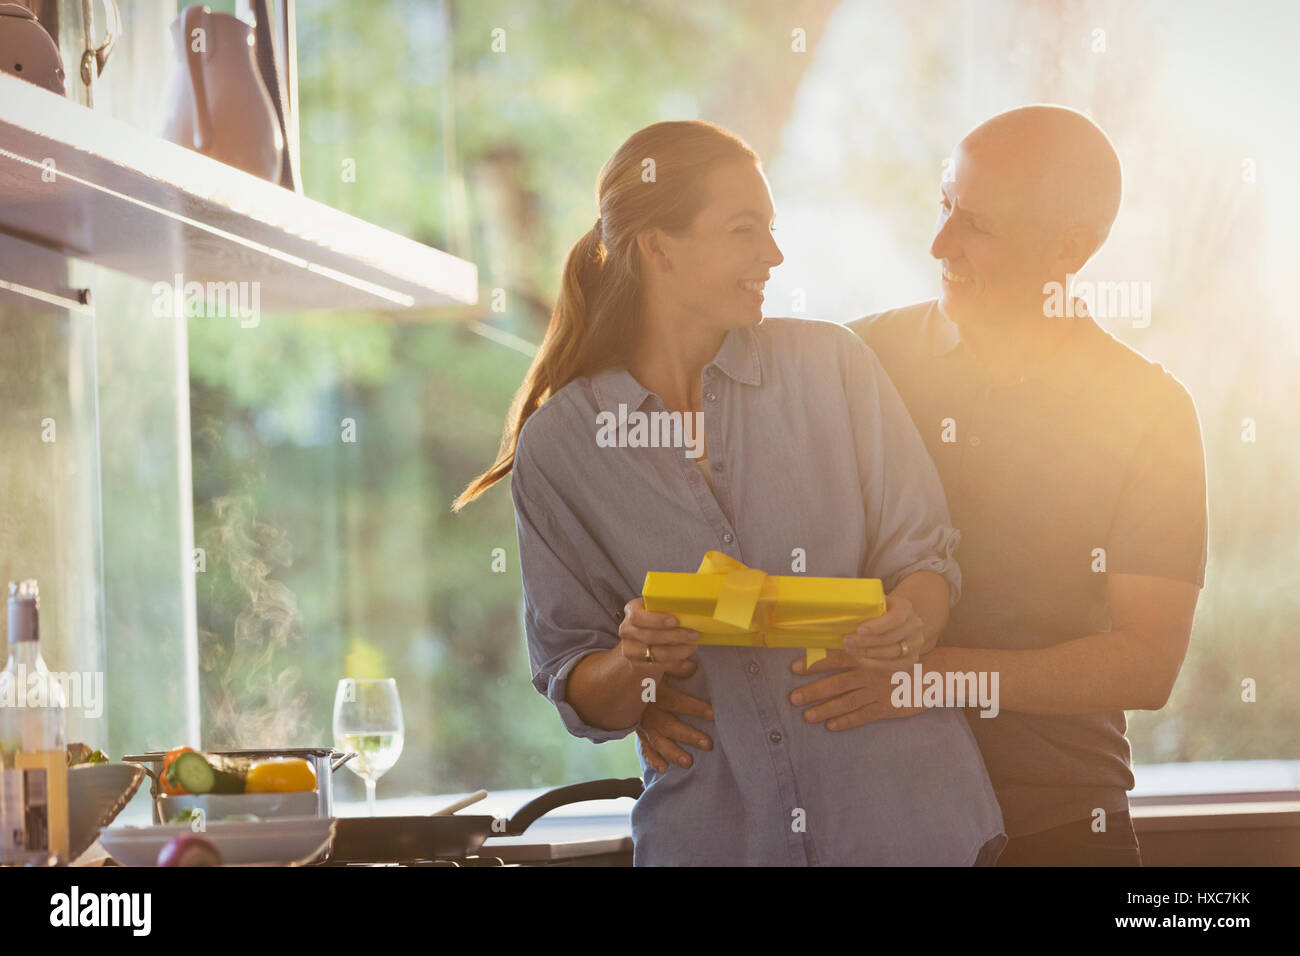 Smiling mari surprenant épouse avec don en cuisine ensoleillée Banque D'Images